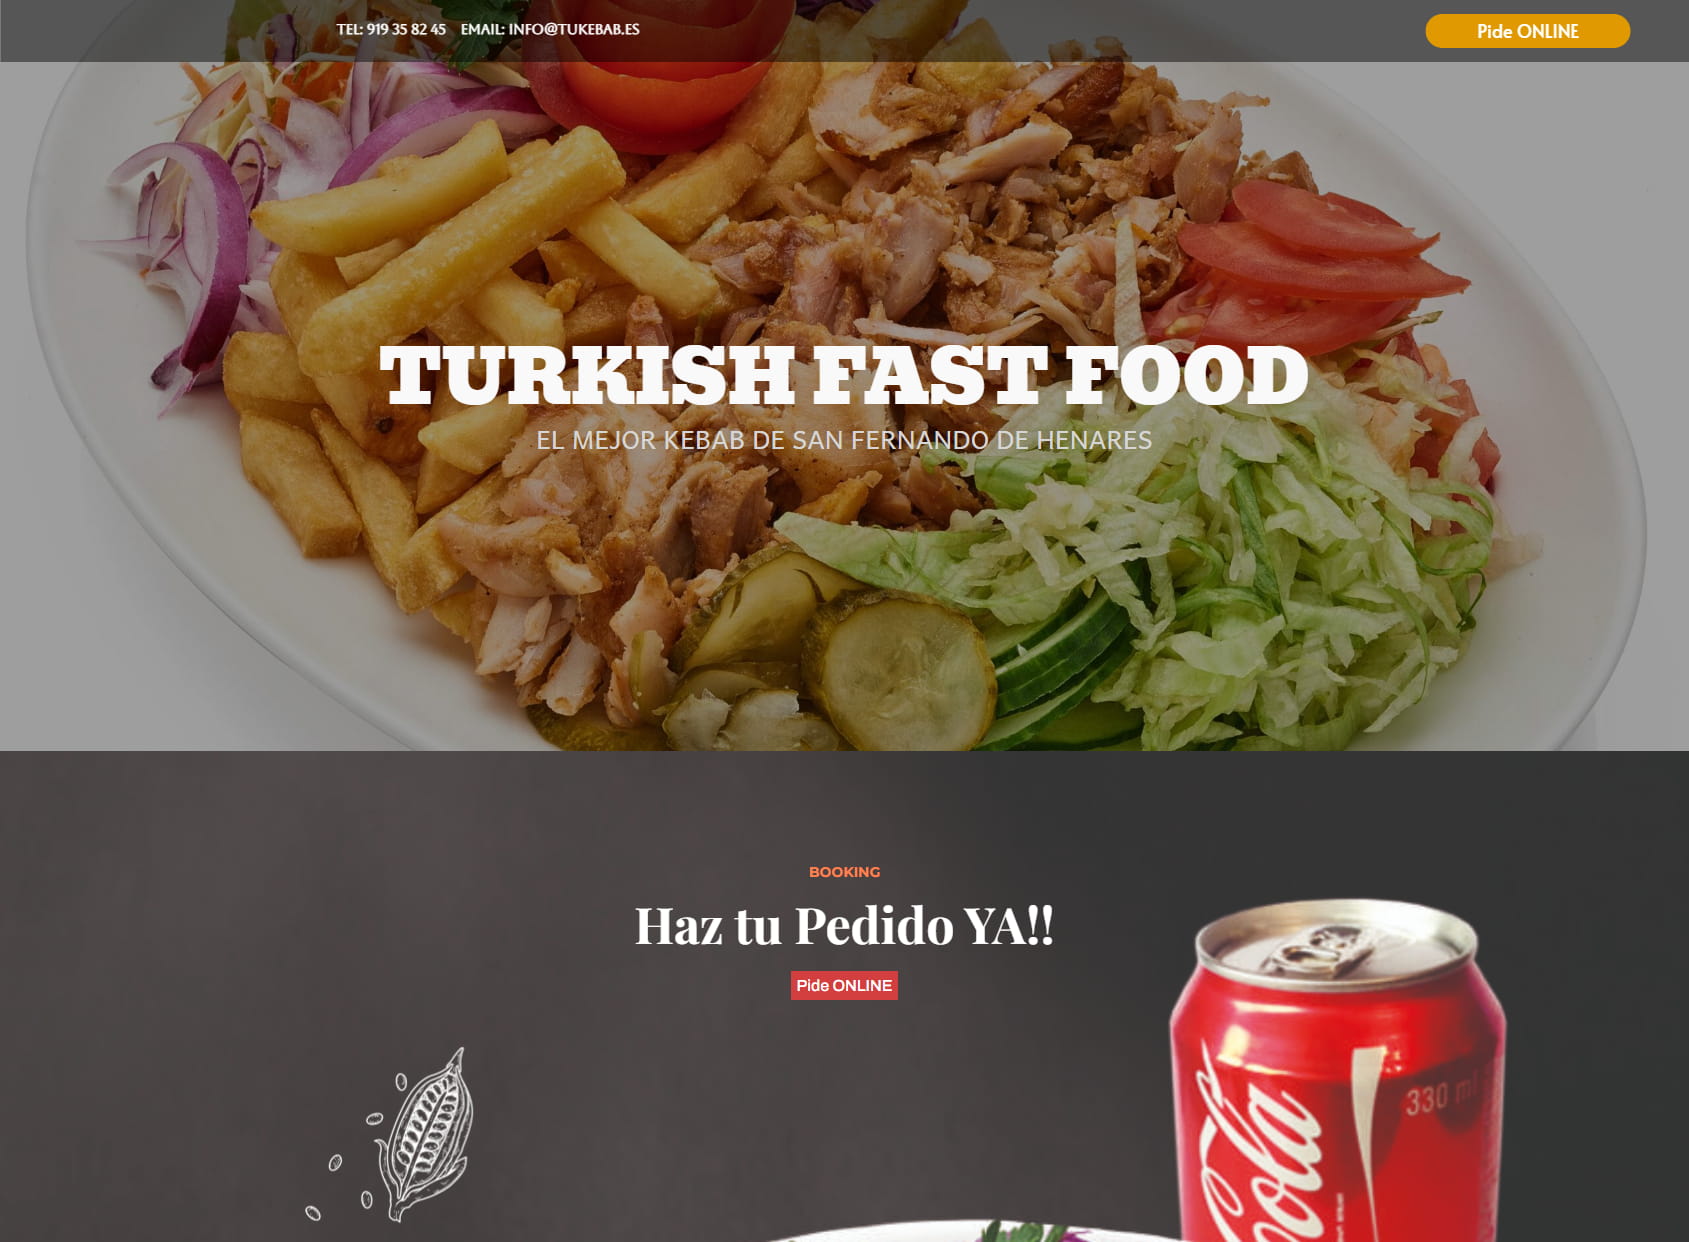 Turkish fast foods